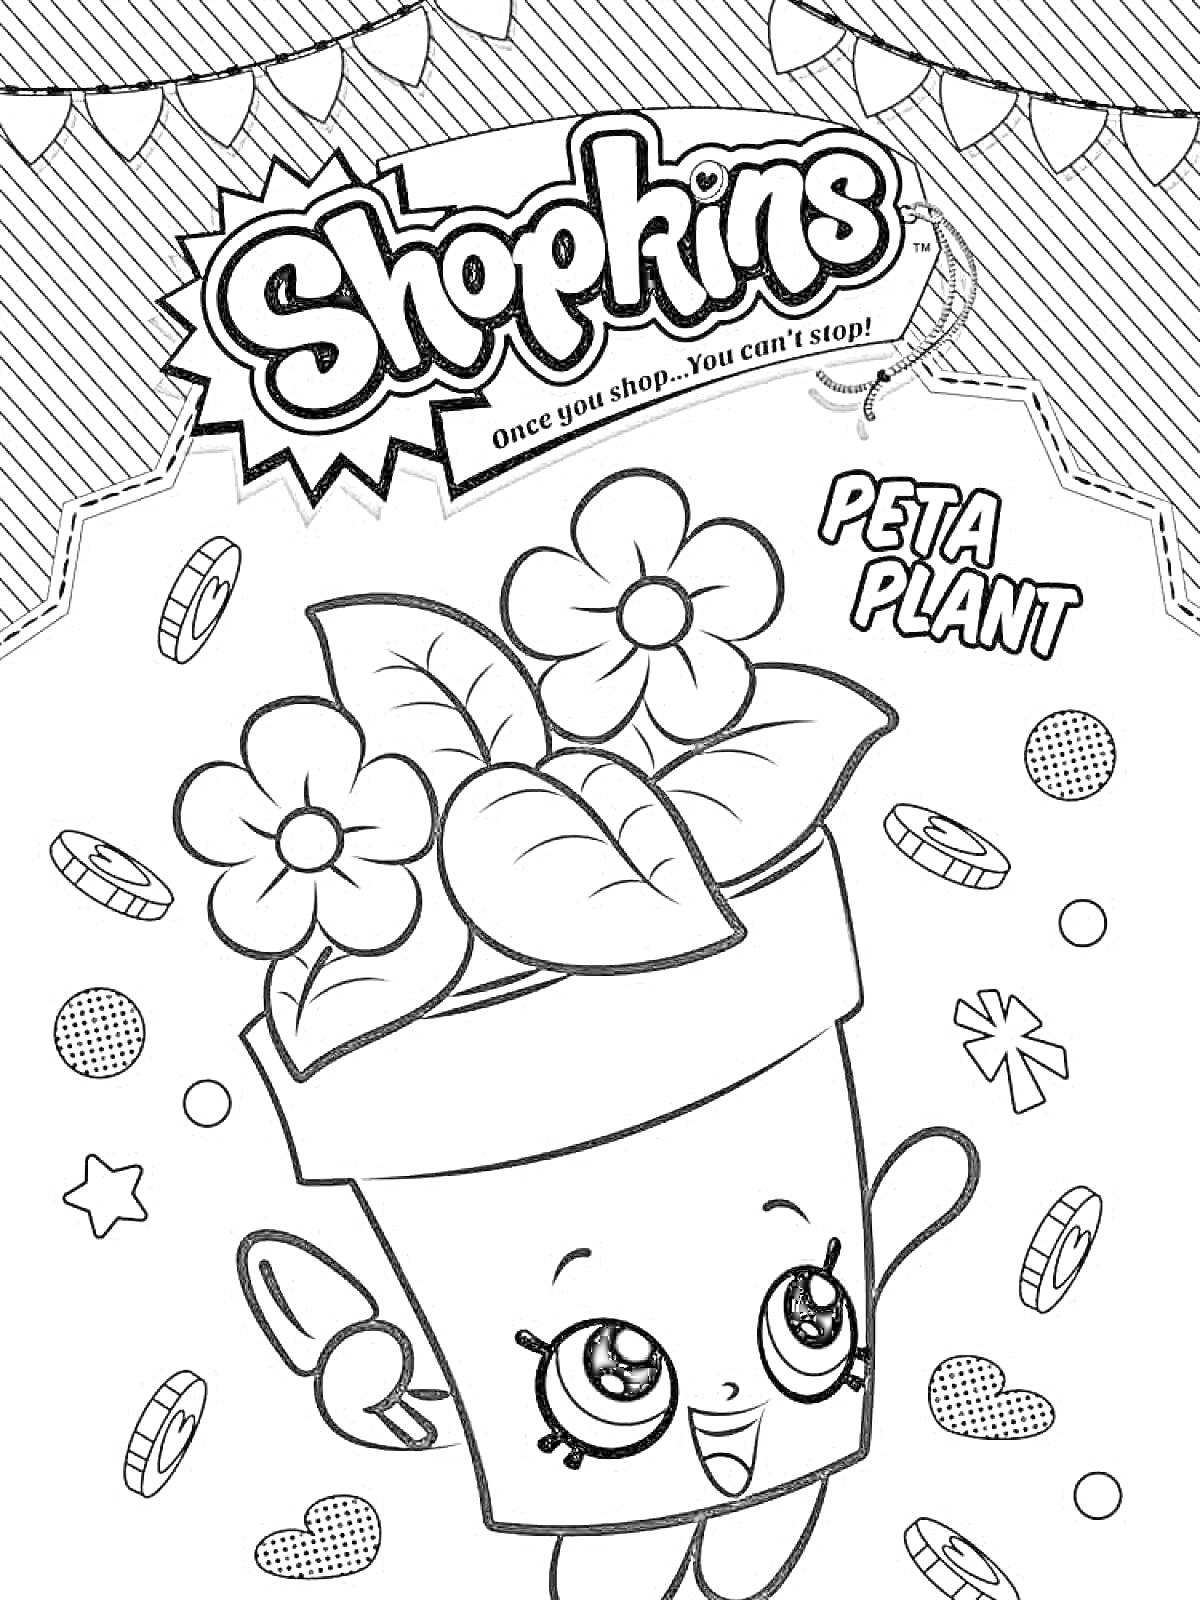 Раскраска Peta Plant с цветами в горшке, сопровождаемая звездами, кругами и блестками